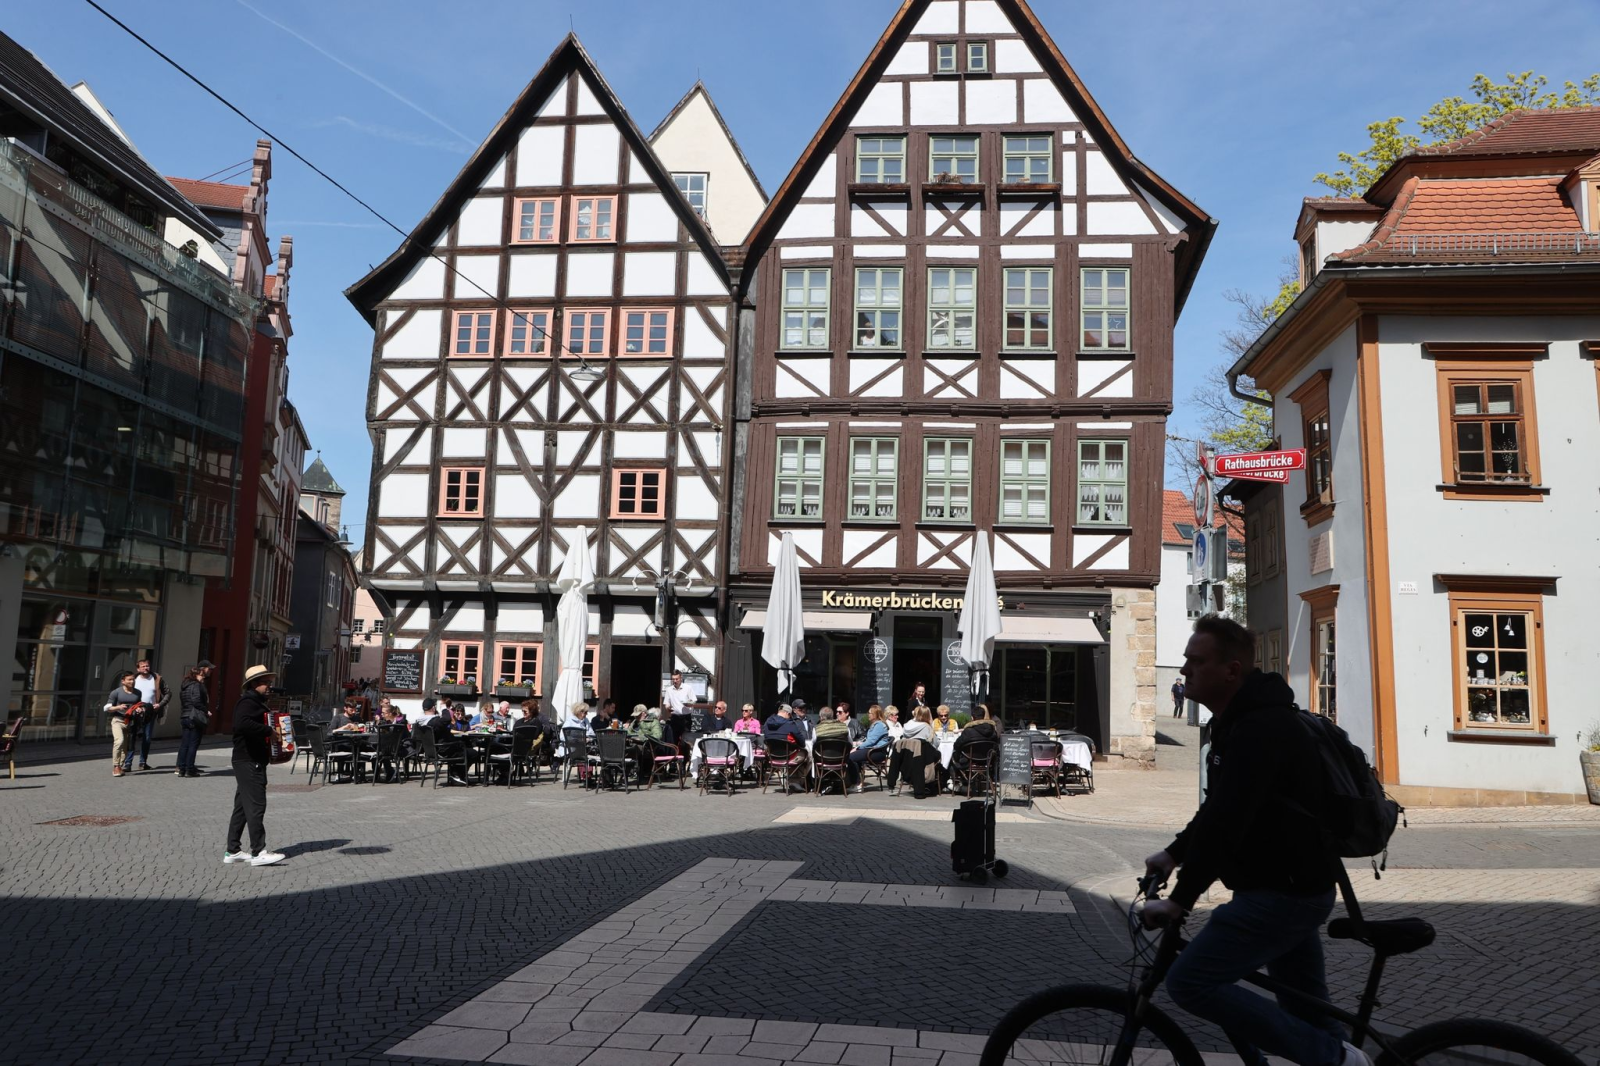 Gäste sitzen vor Restaurants und Cafes im Zentrum von Erfurt.